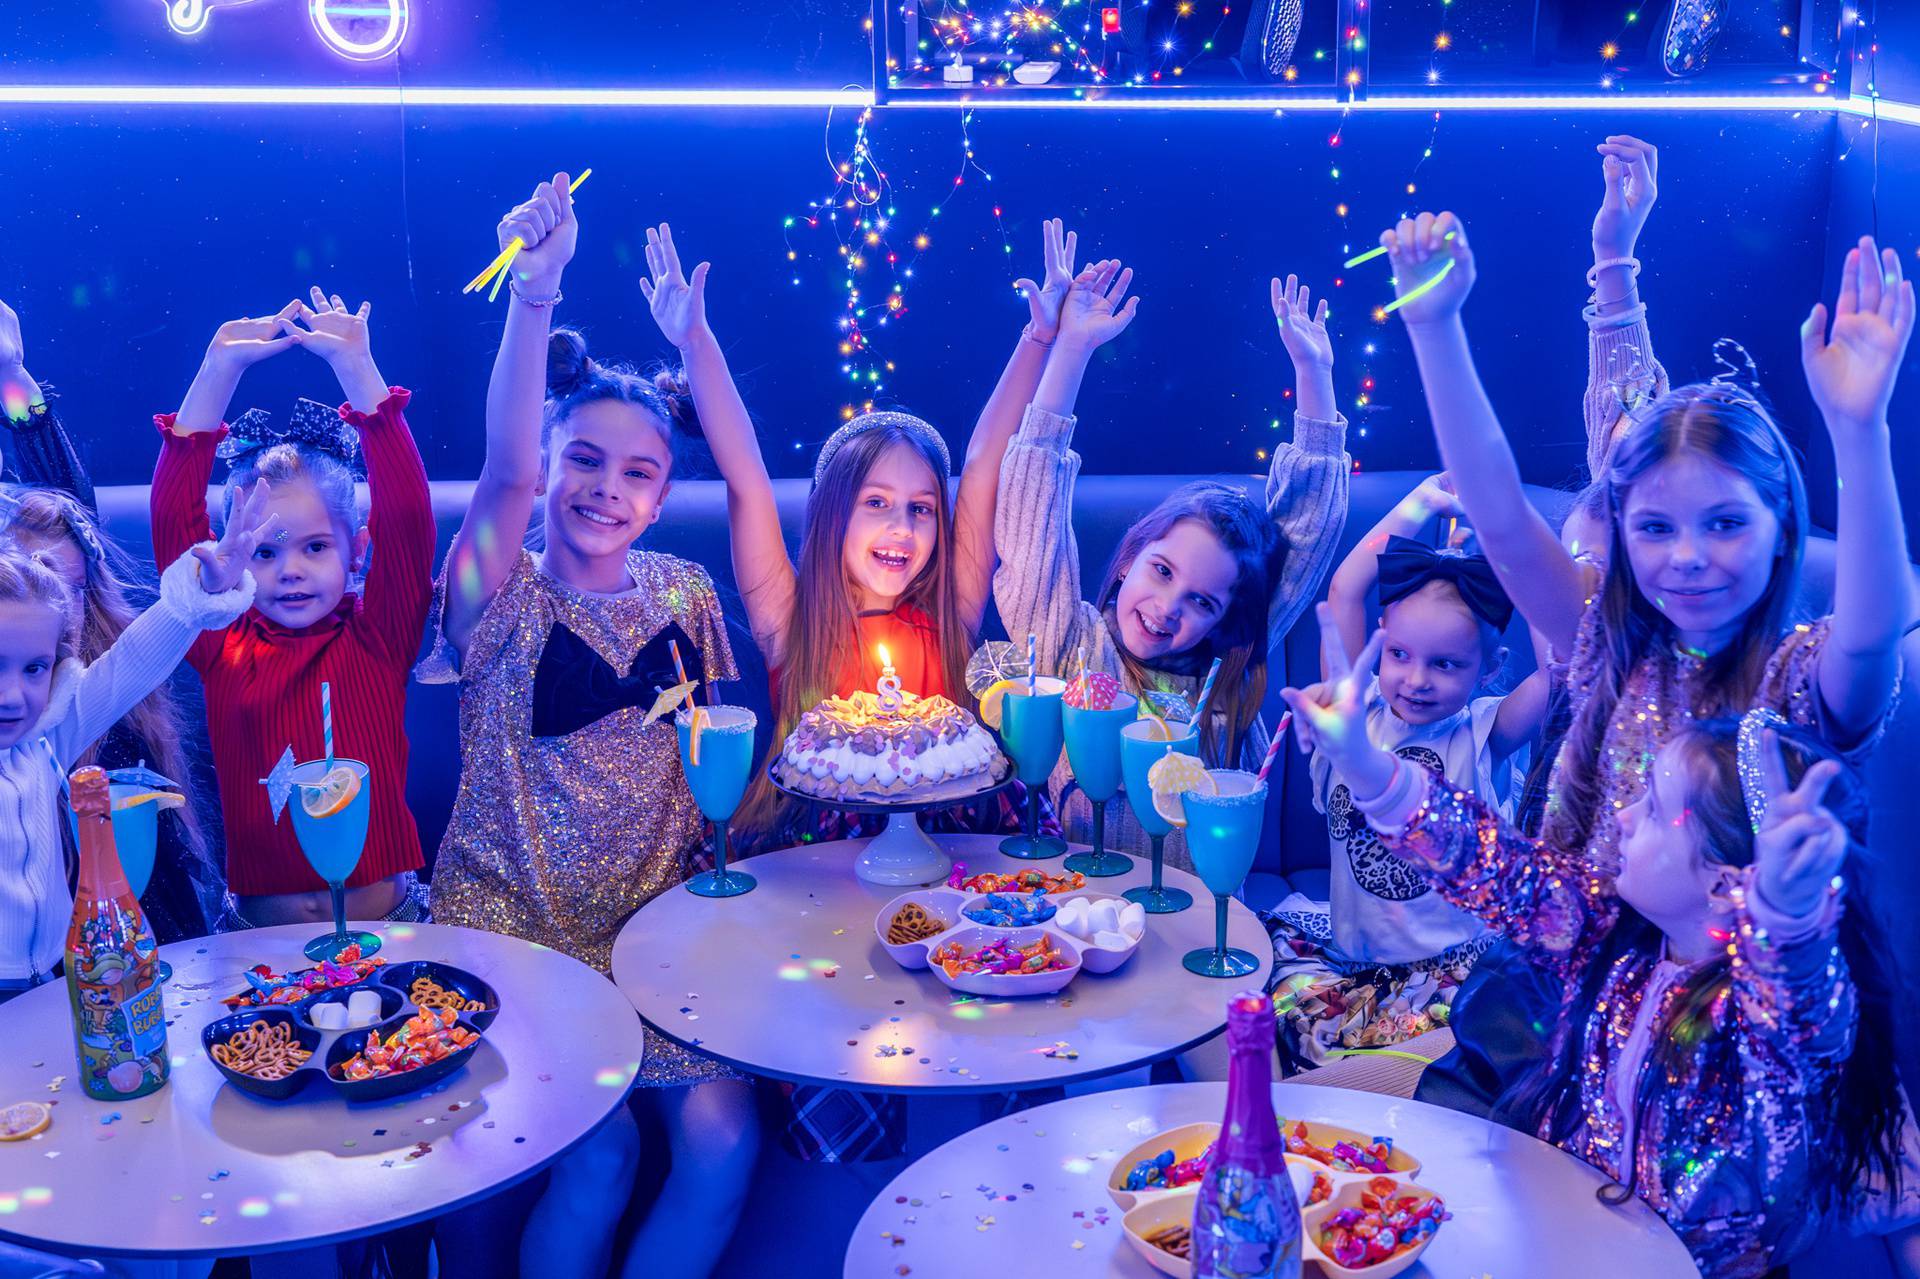 Gdje možete djeci organizirati rođendansku proslavu iz mašte i zabavu bez stresa za roditelje?